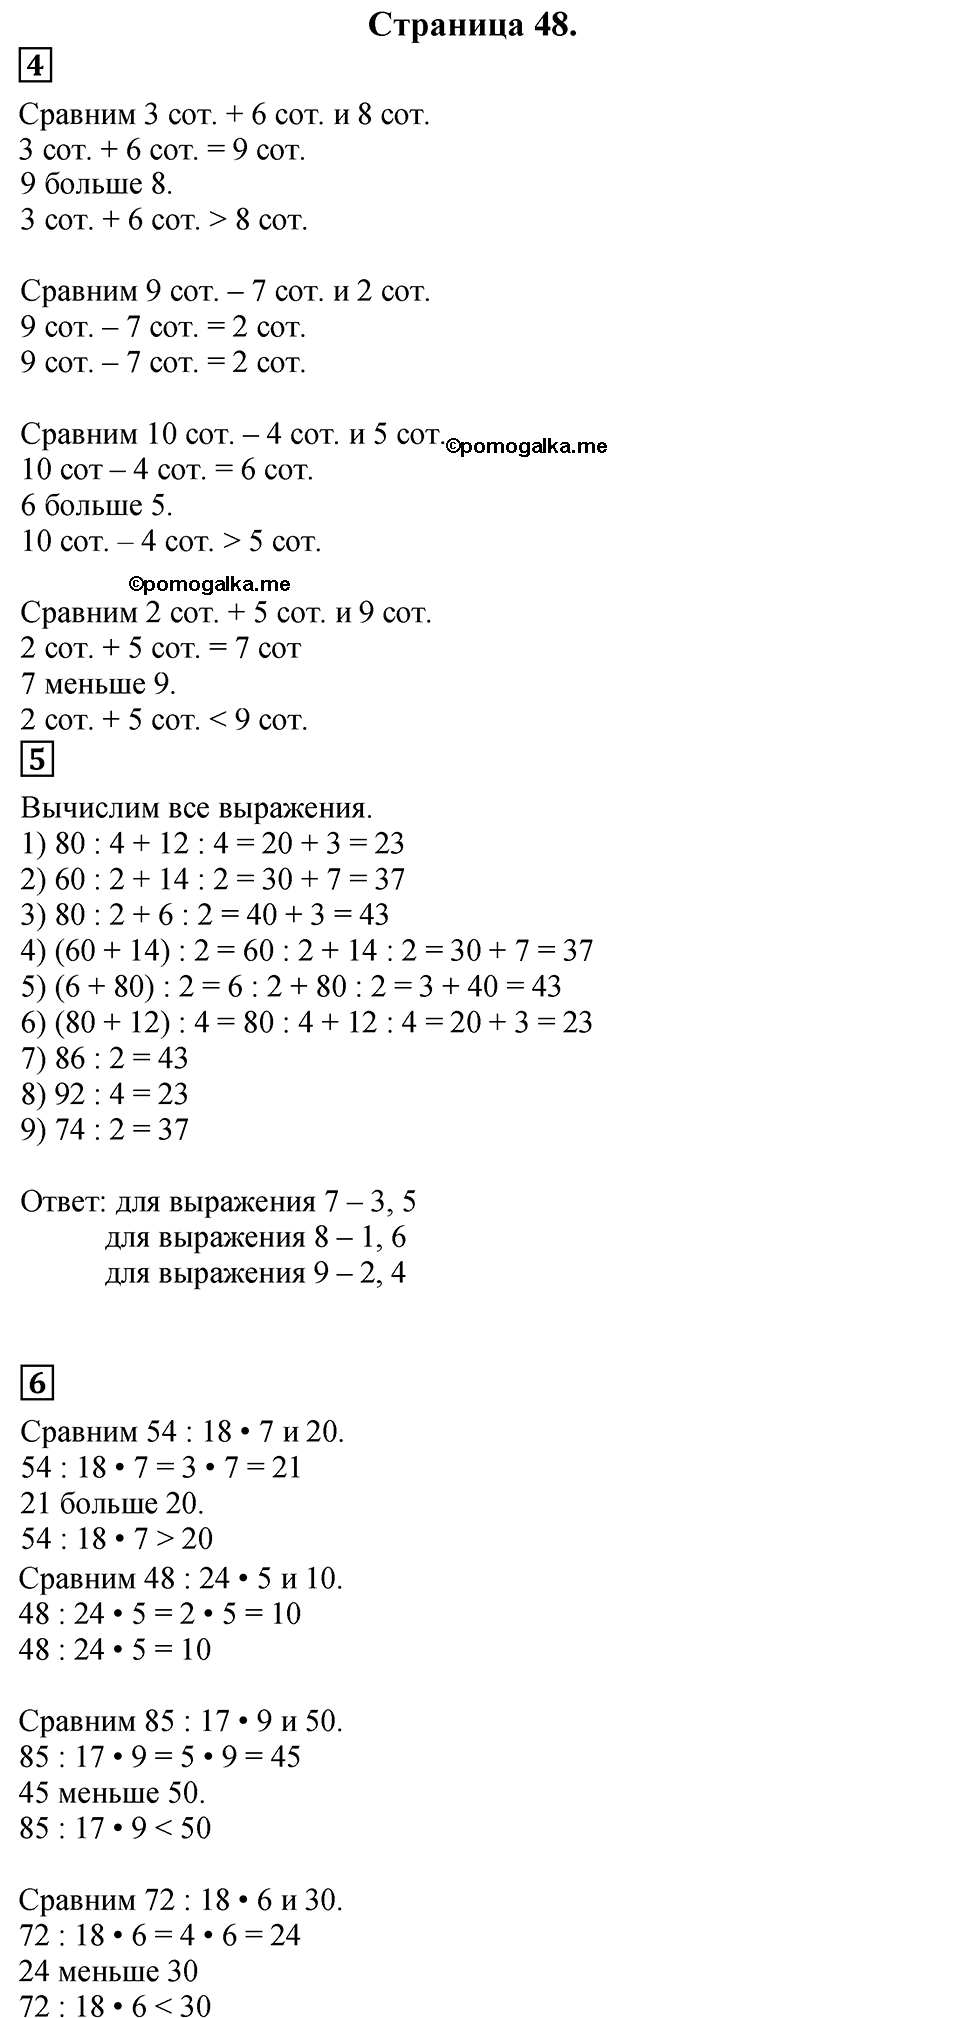 Страница №48 Часть 2 математика 3 класс Дорофеев